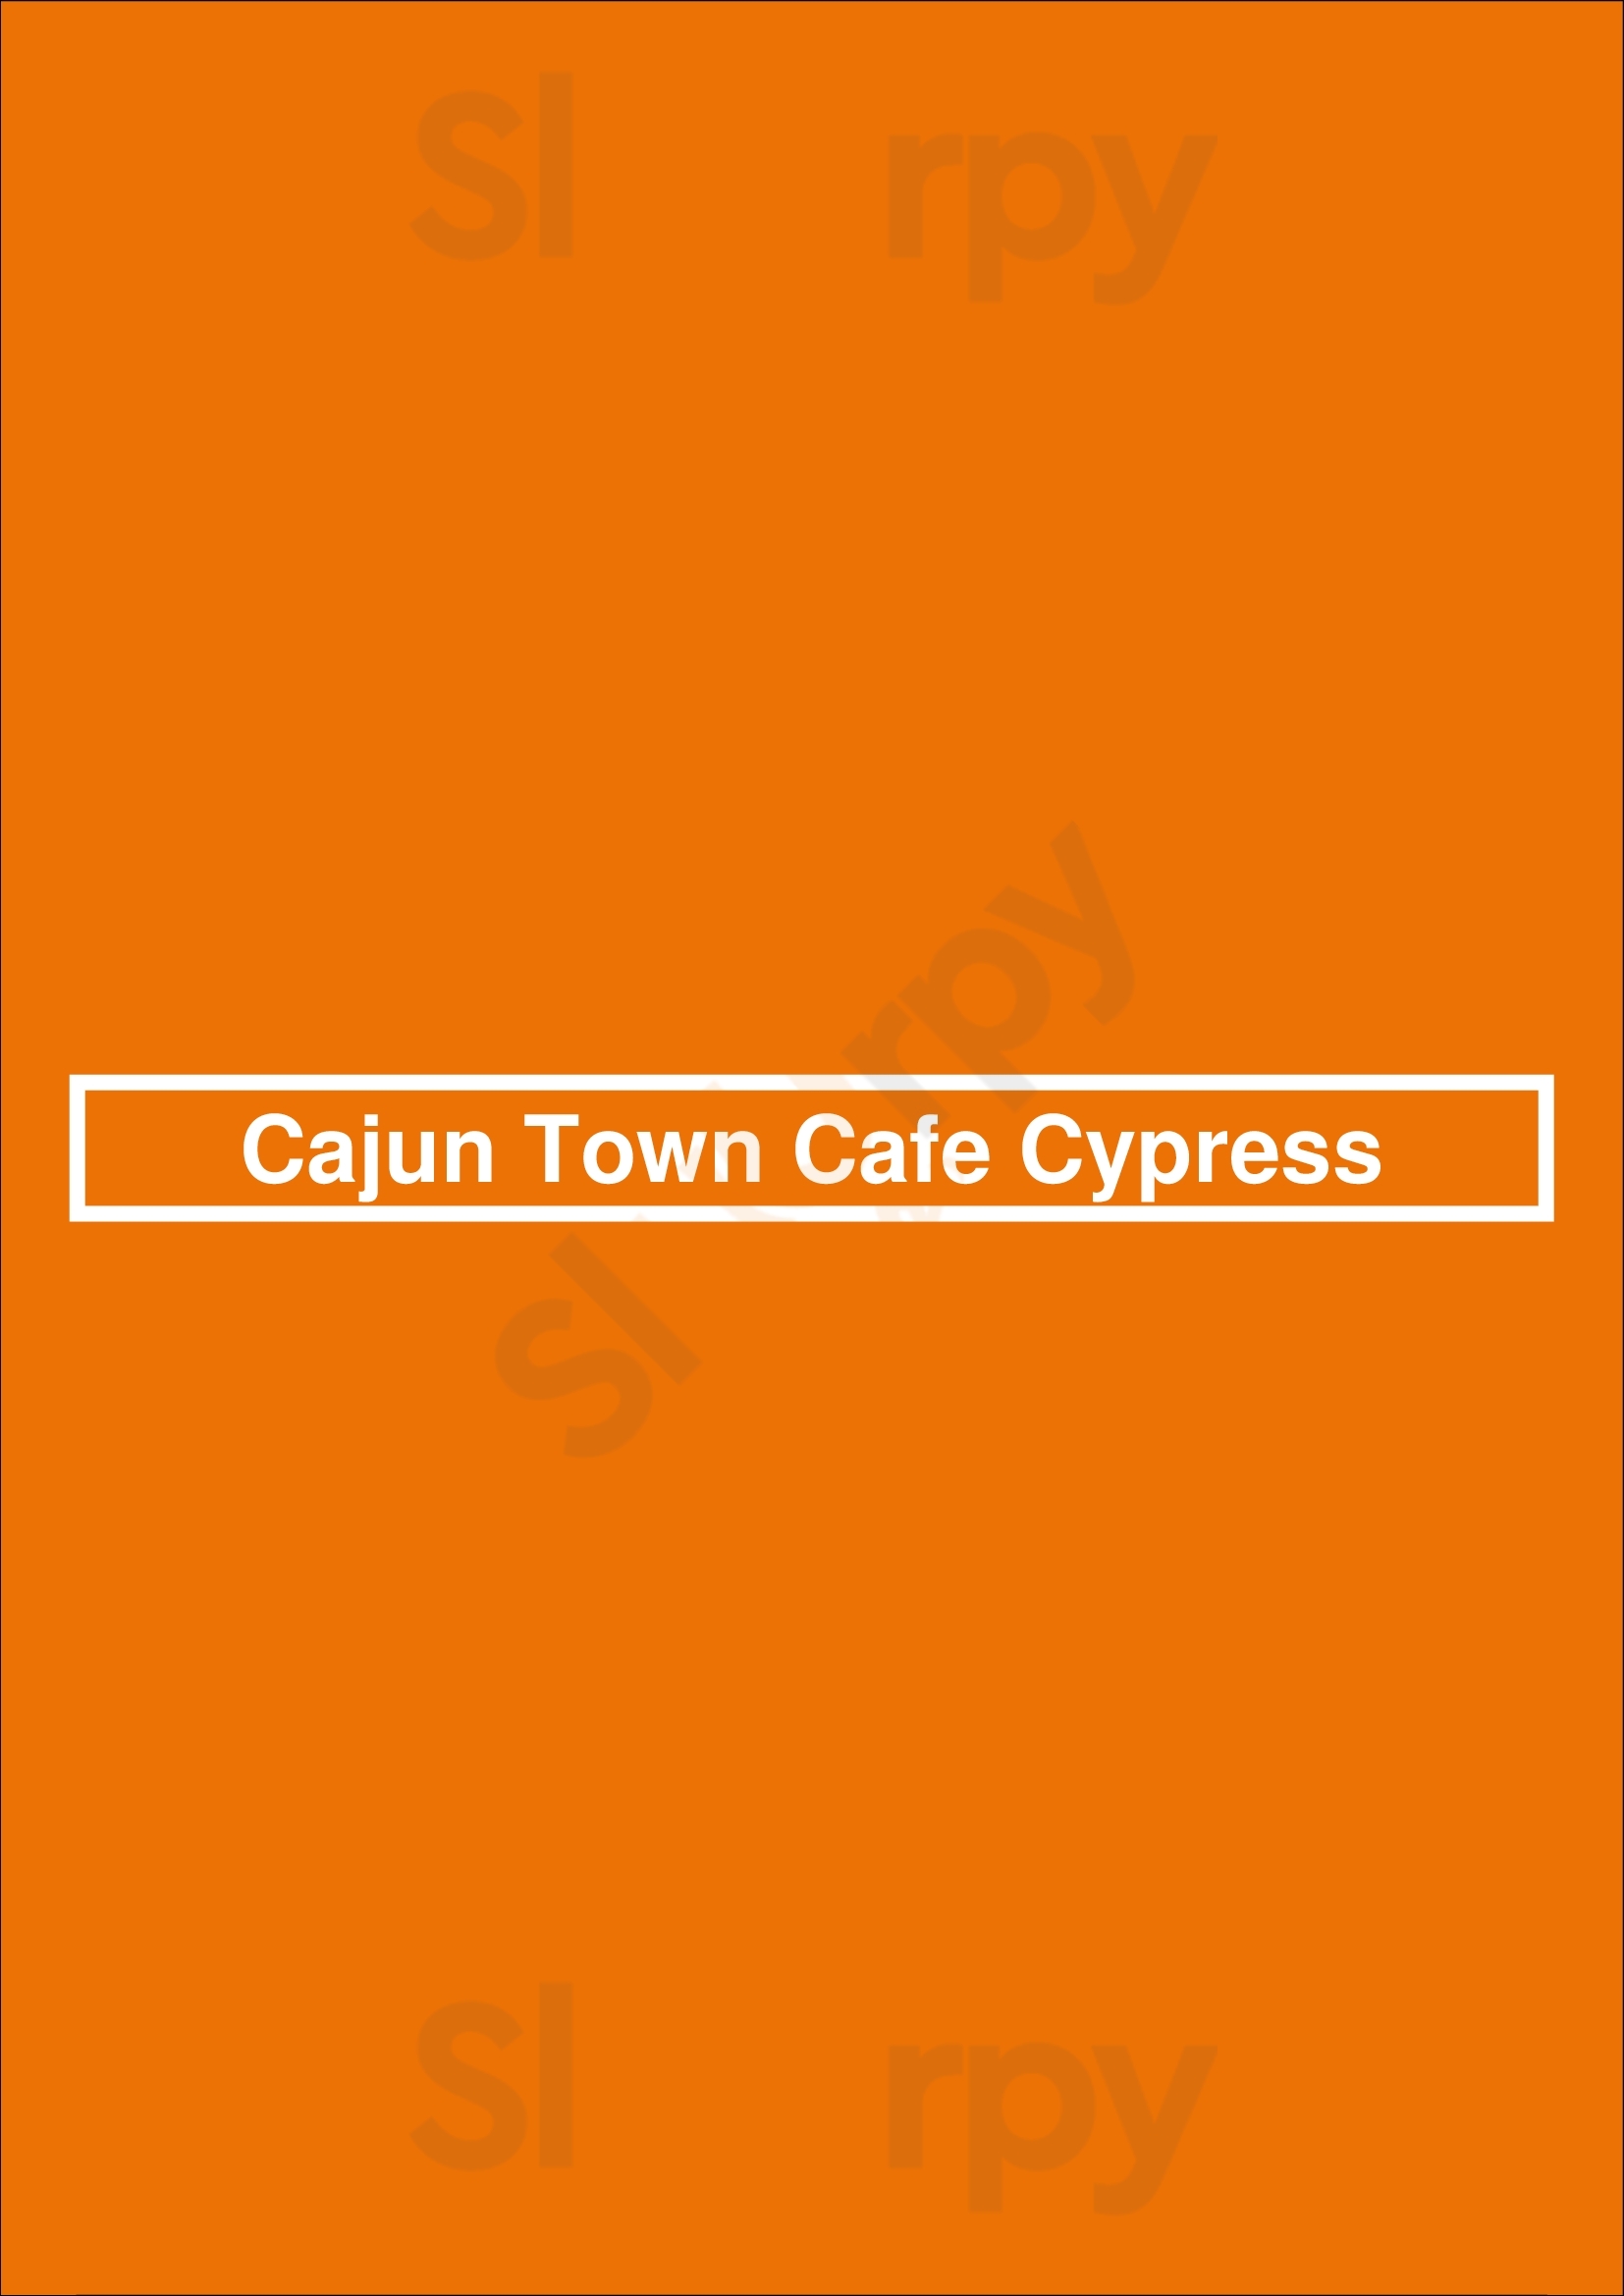 Cajun Town Cafe Cypress Houston Menu - 1